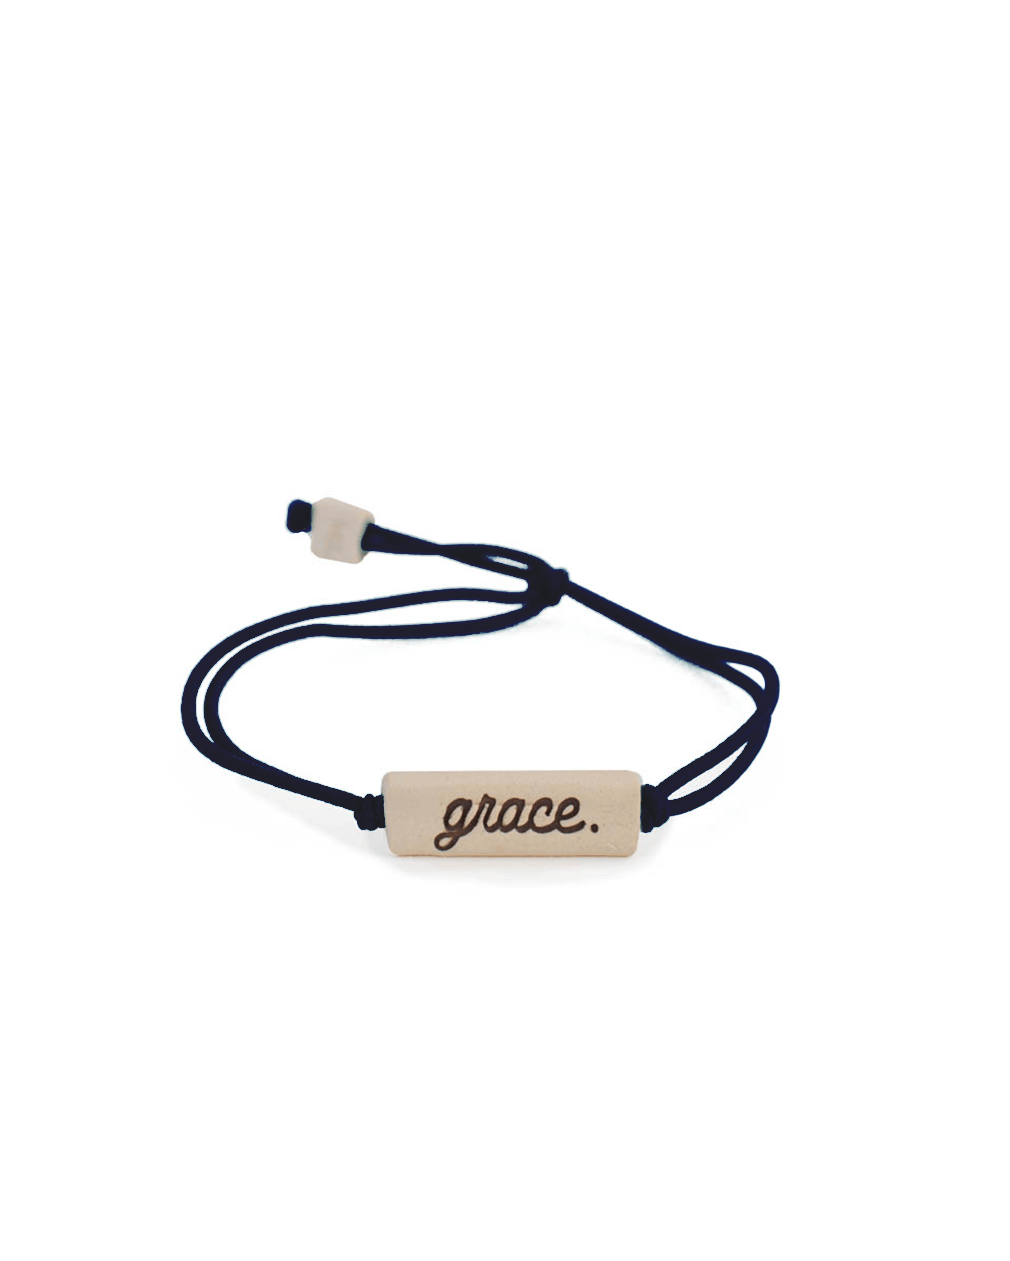 grace. Lovely Bracelet - MudLOVE